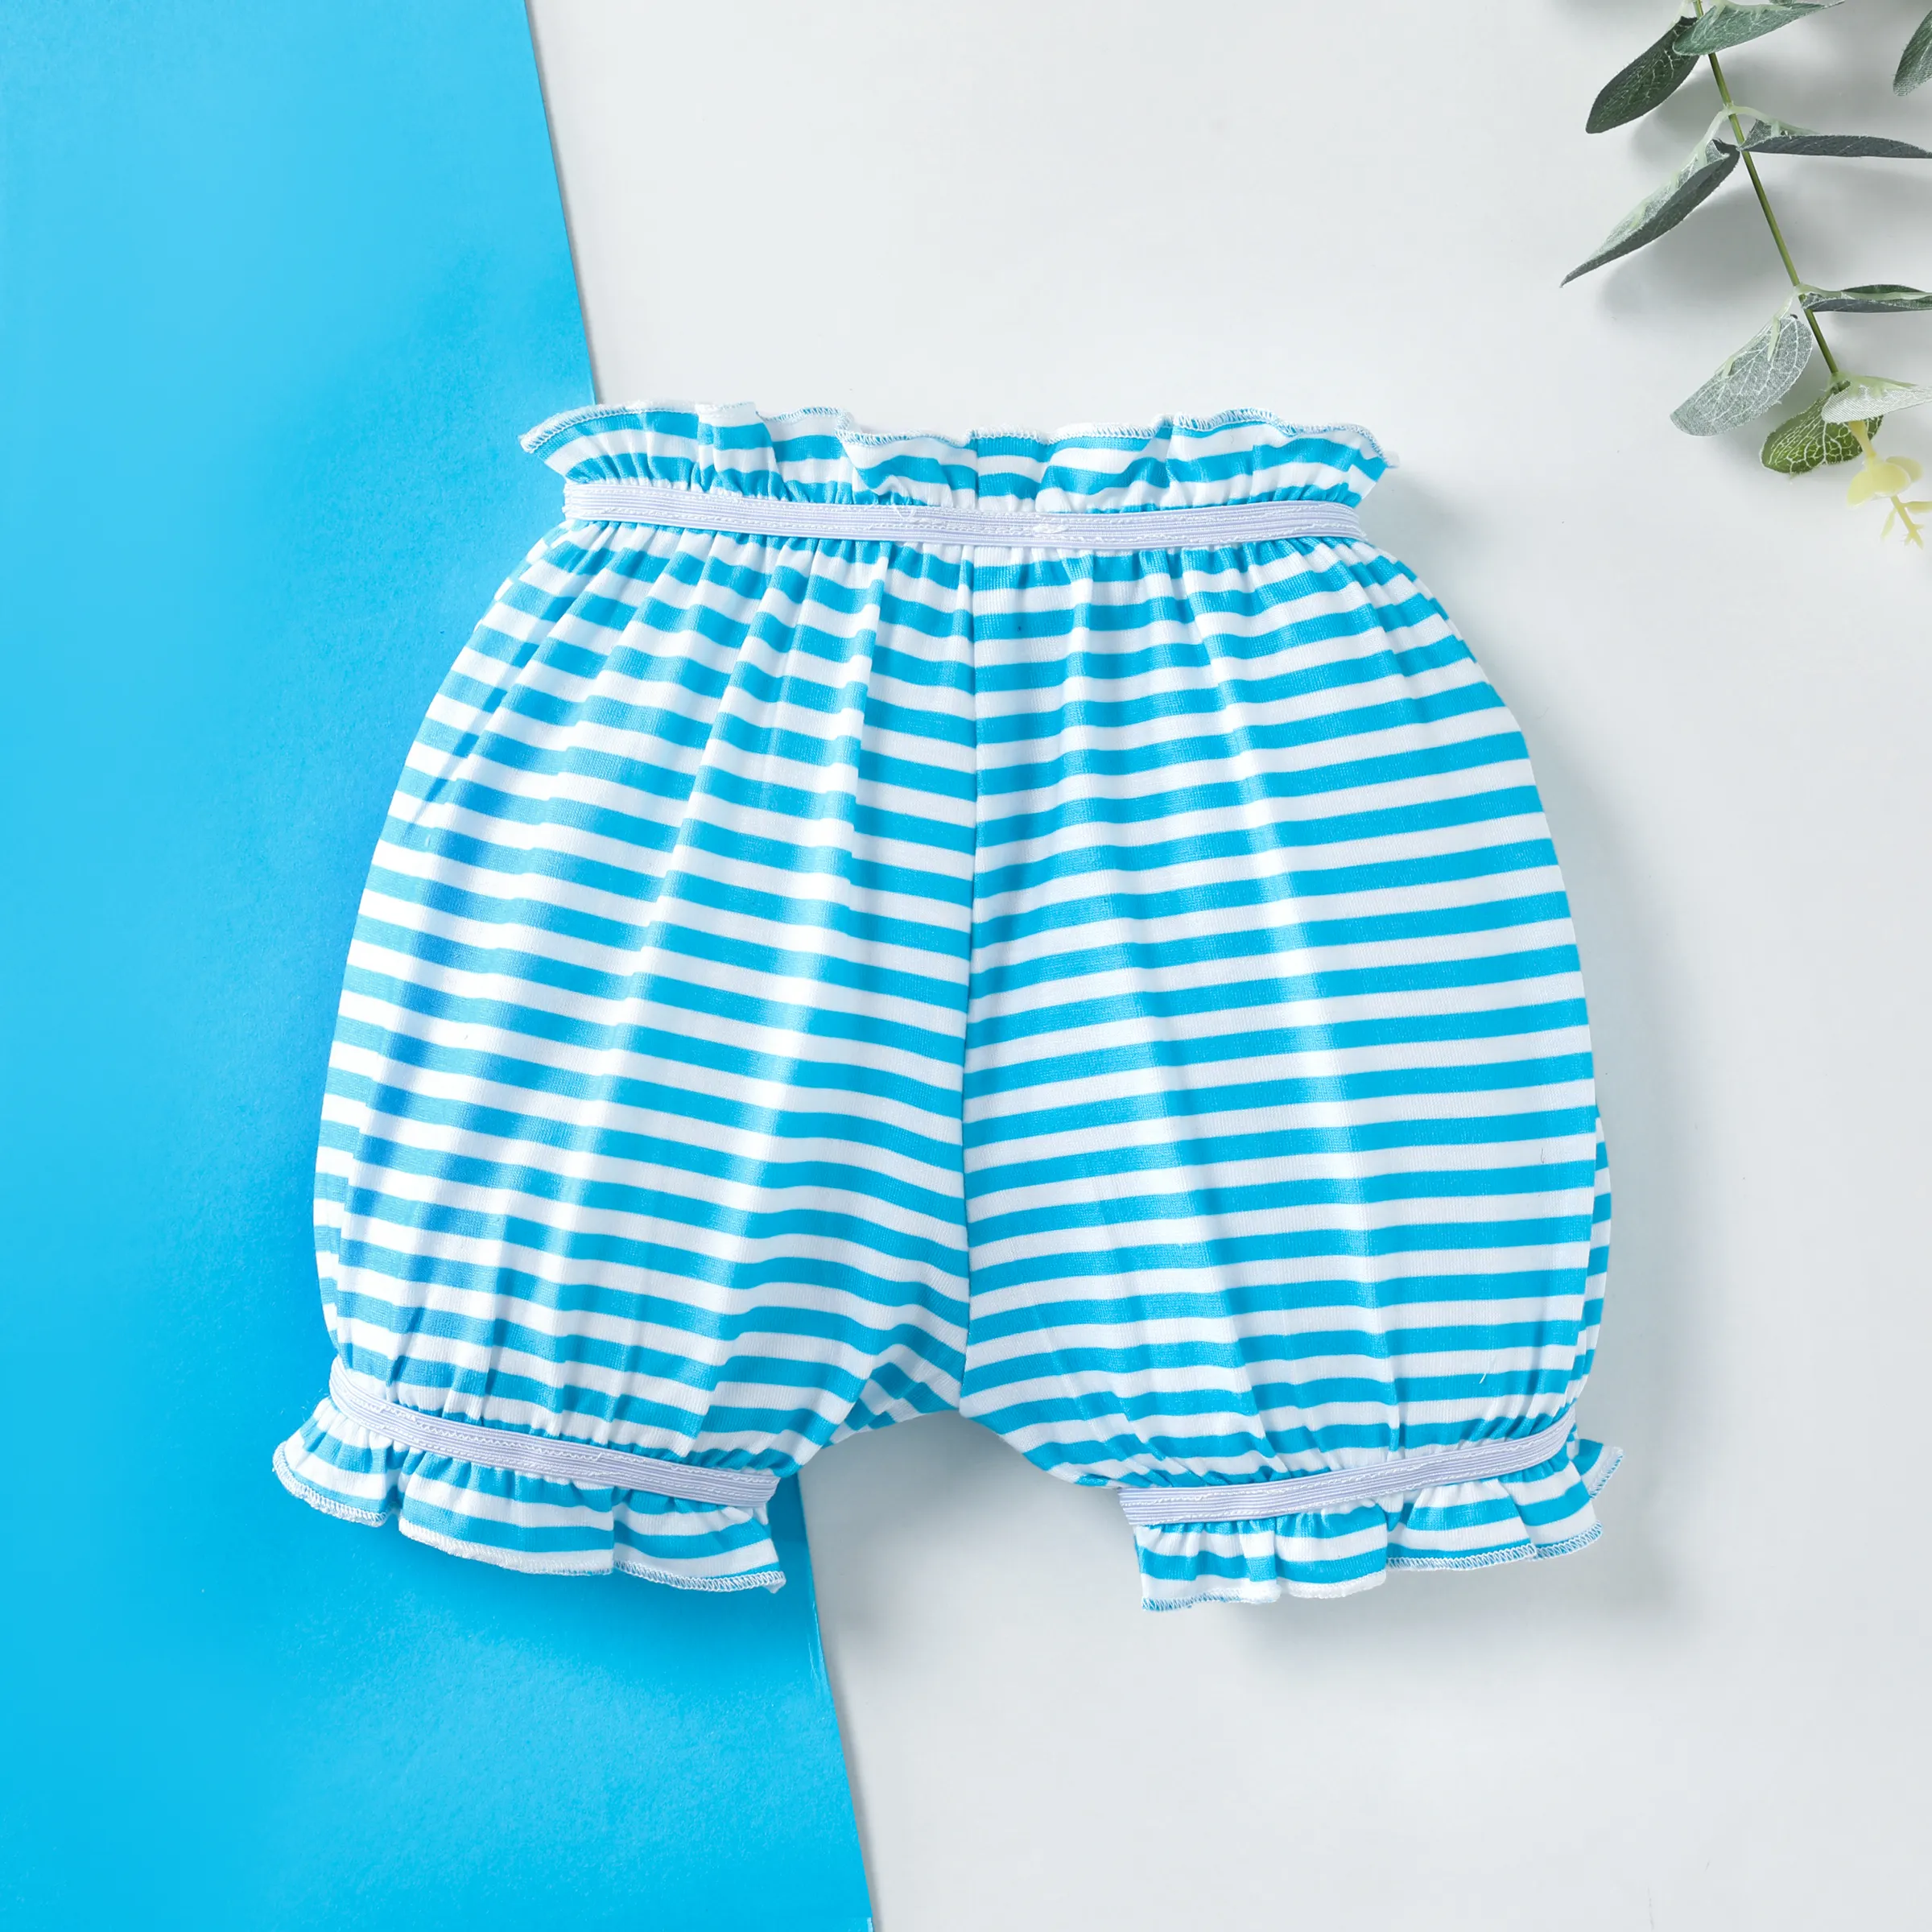 Kids Children Boys Underwear Set Cute Print Briefs Shorts Cotton Underwear  Trunks 3PCS Baby Girl Panties (Blue, 18-24 Months)